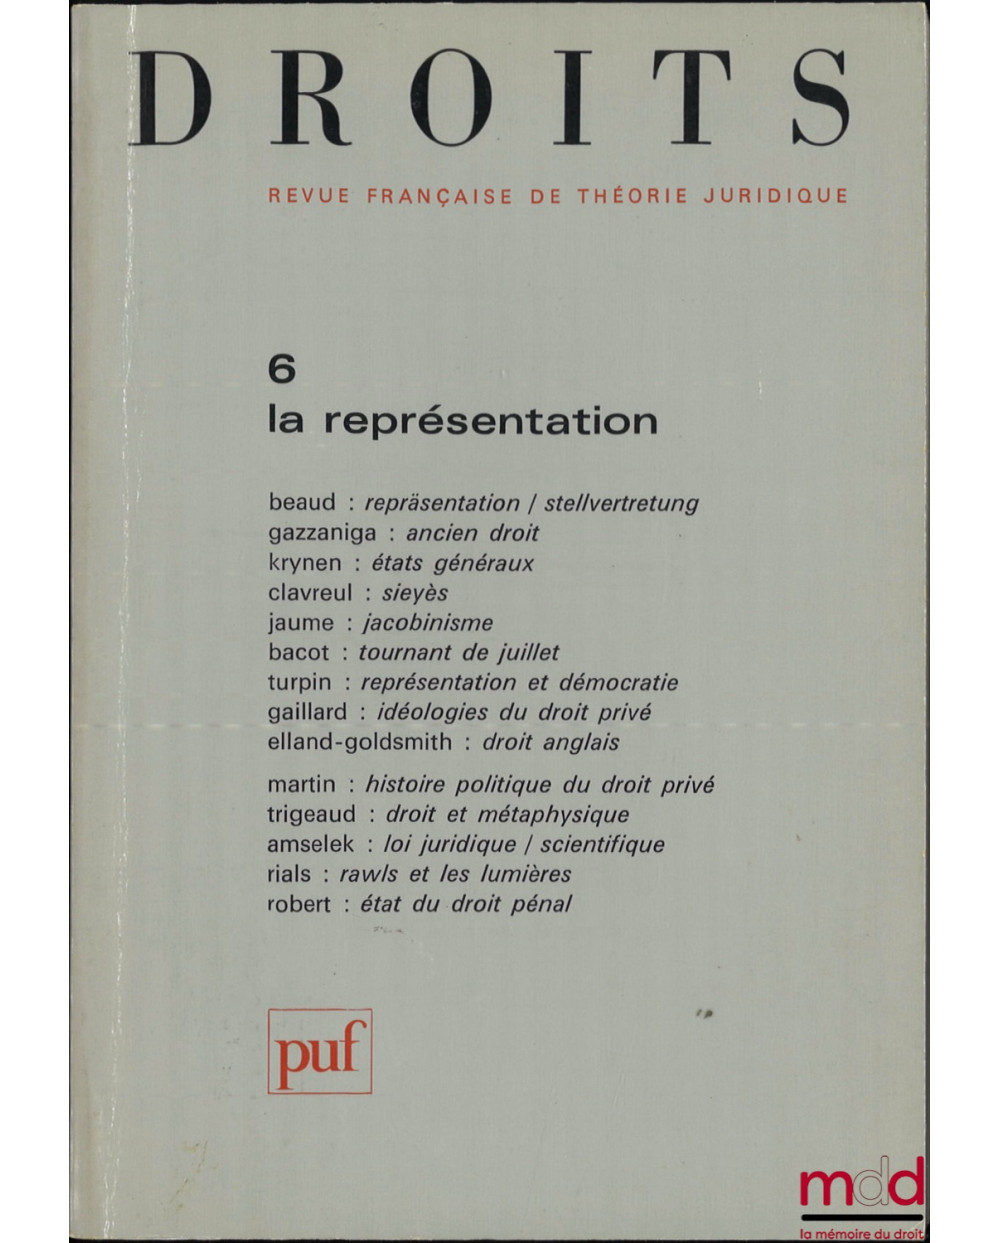 LA REPRÉSENTATION, Droits, Revue Française de Théorie Juridique, n° 6